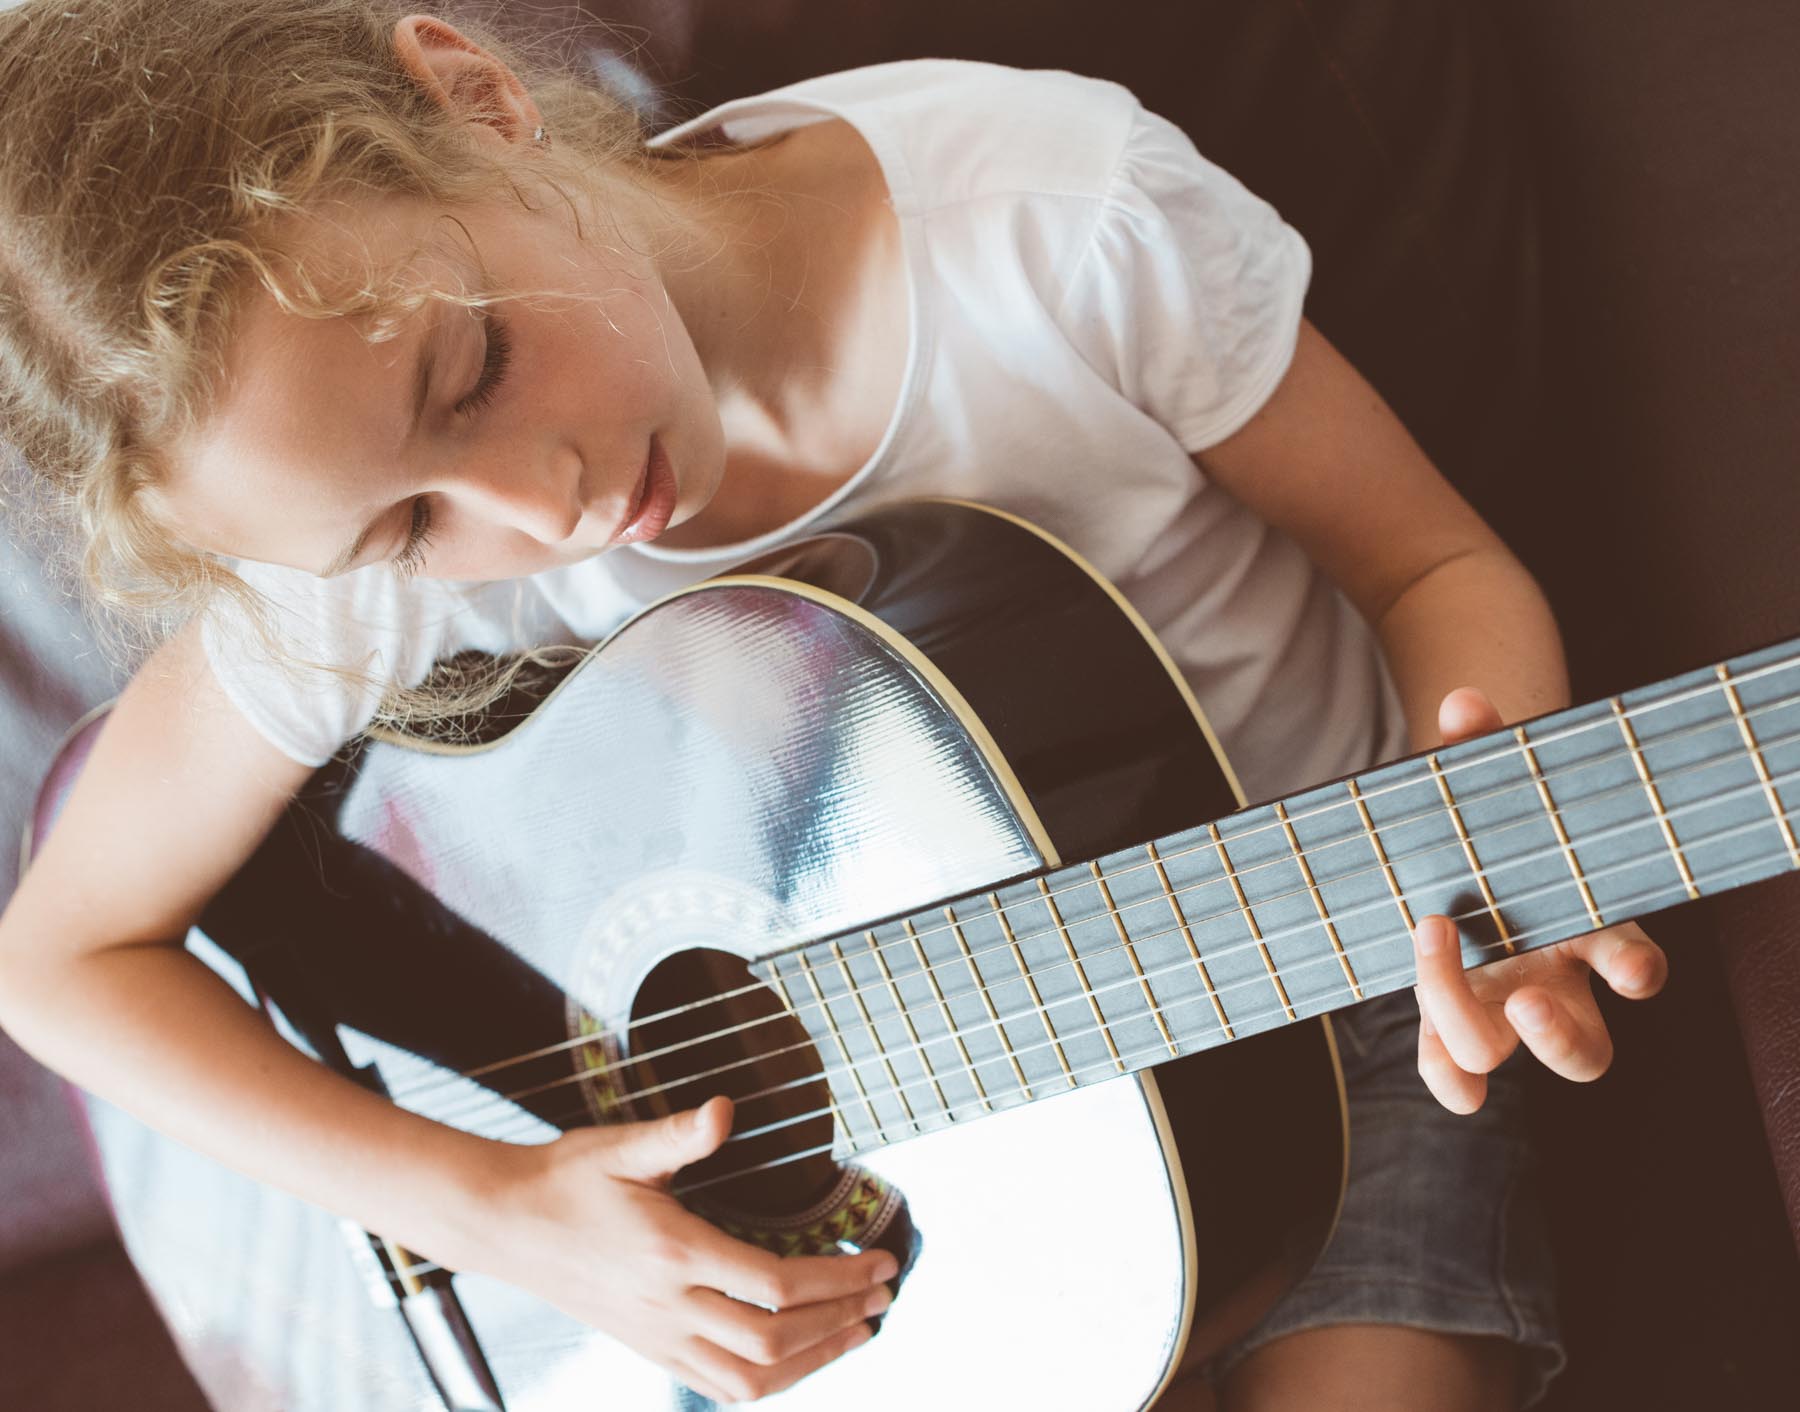 trinajstletna deklica igra klasično kitaro
